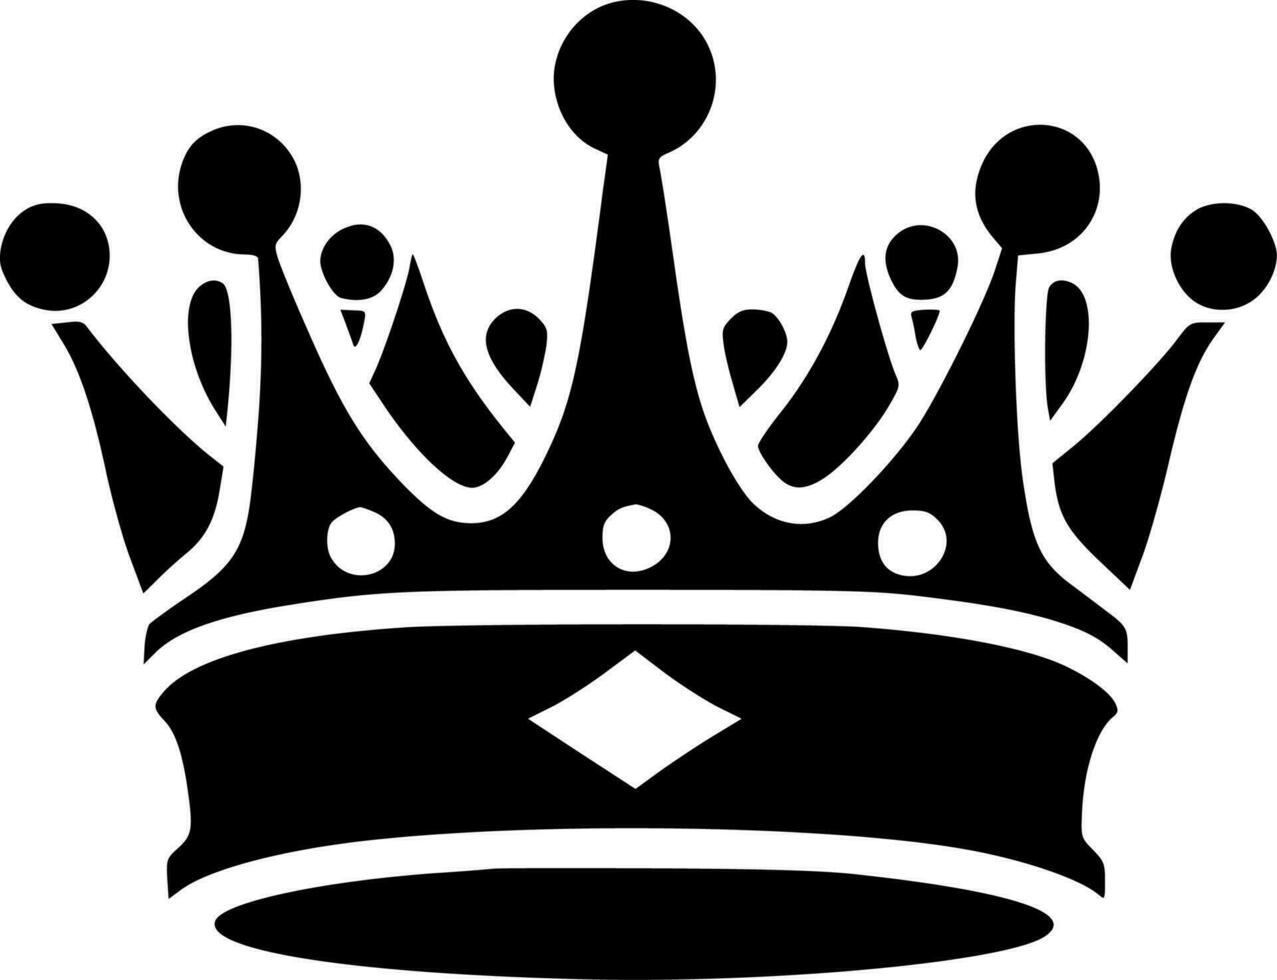 corona, nero e bianca vettore illustrazione